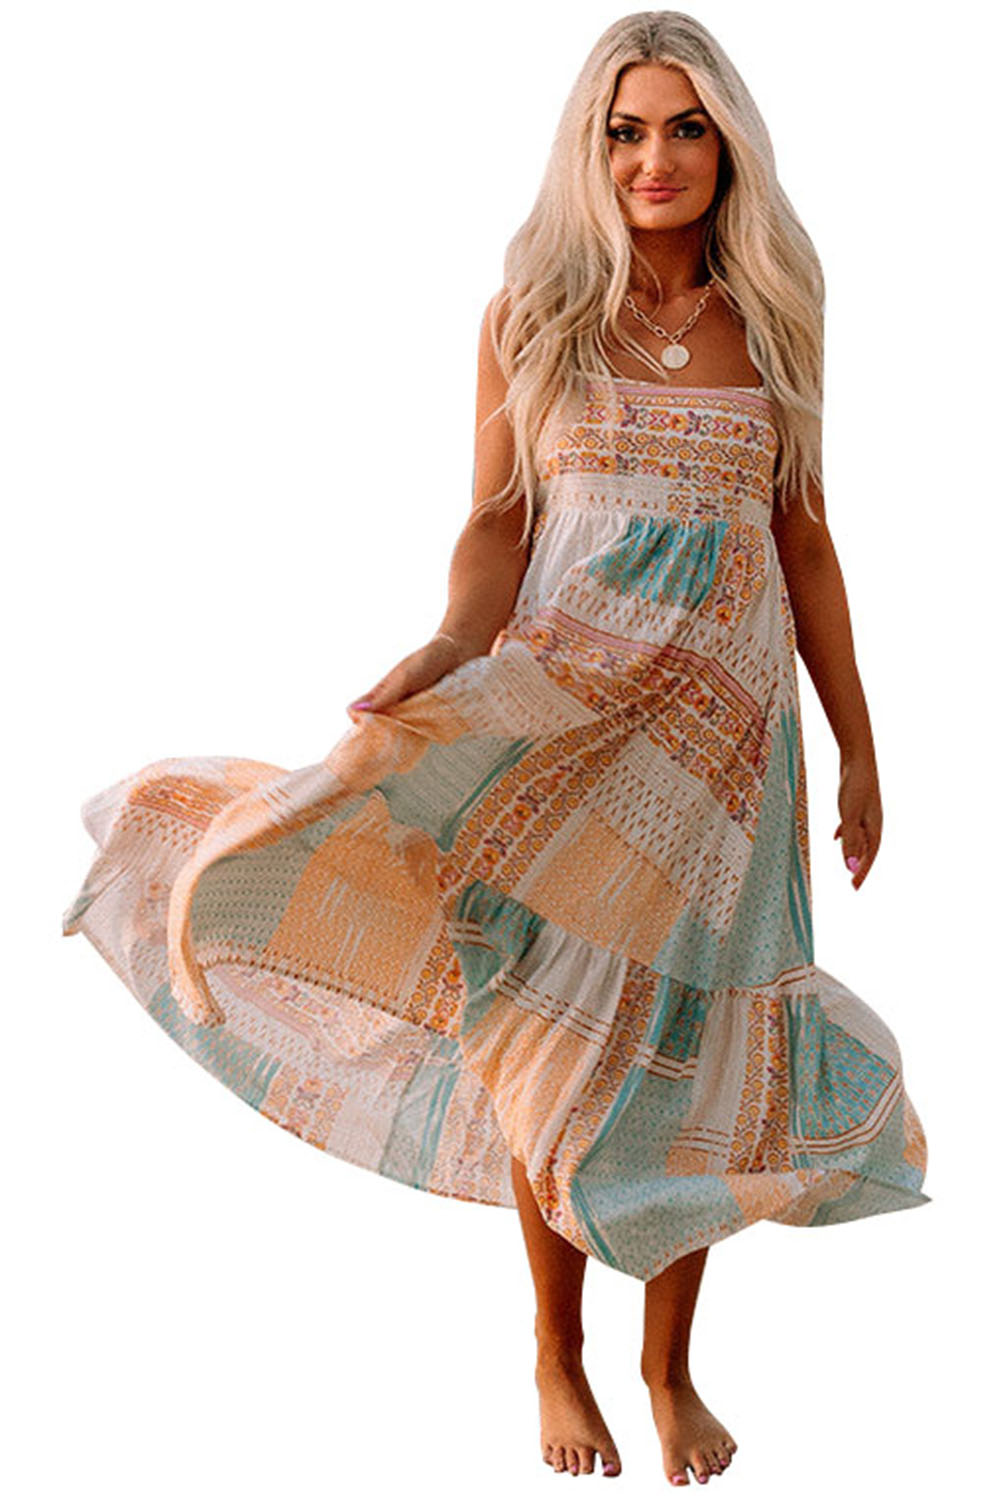 Mehrfarbiges Sommerkleid mit eckigem Ausschnitt im Boho-Patchwork-Print